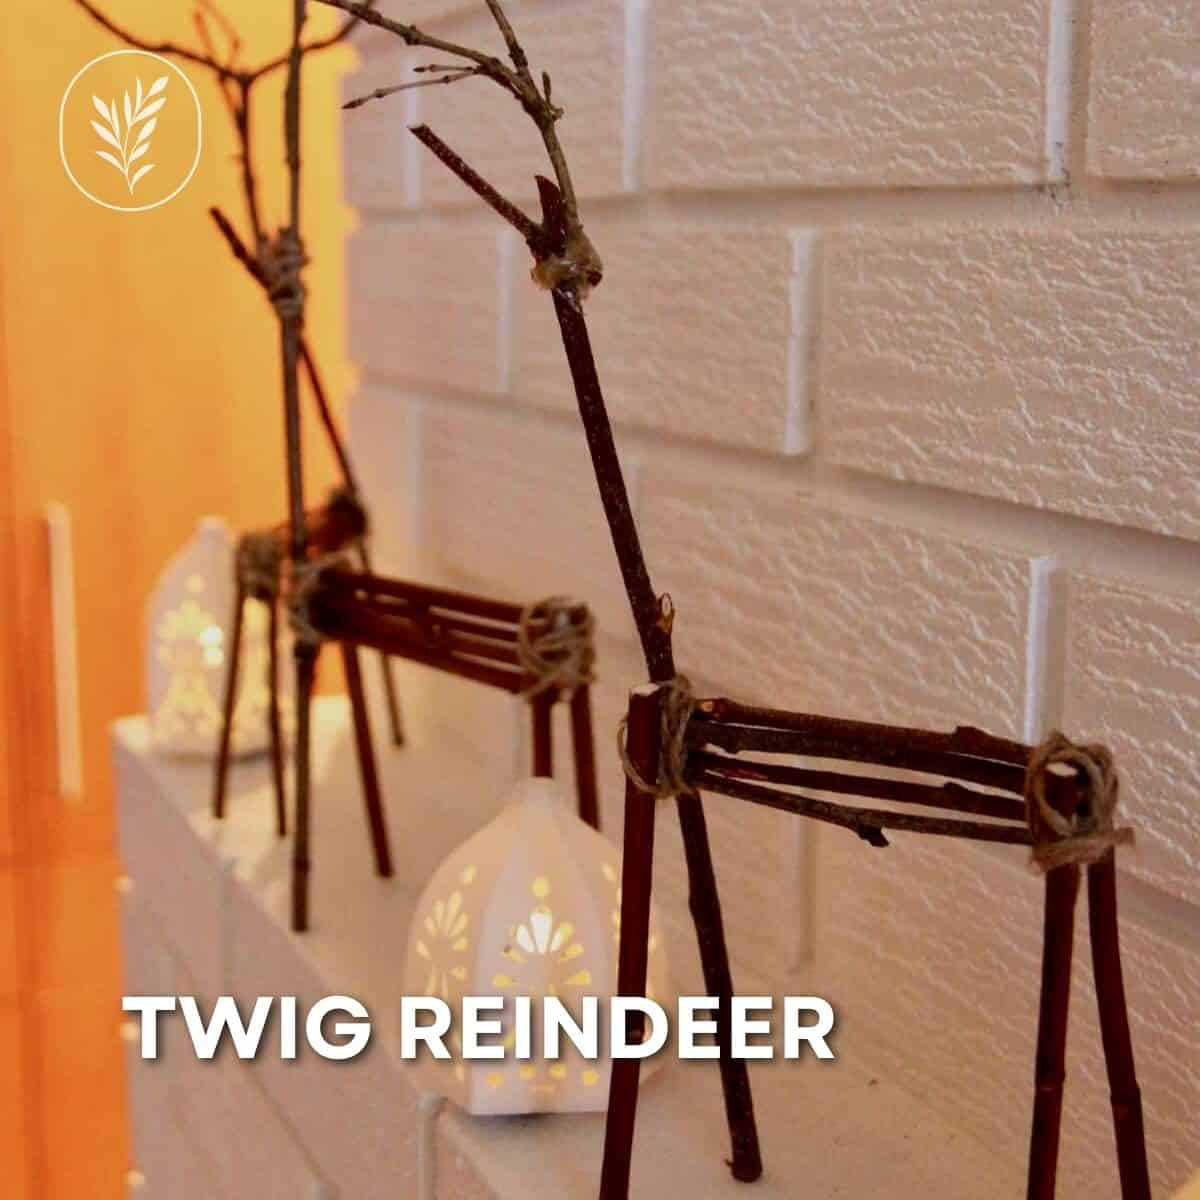 Twig reindeer via @home4theharvest